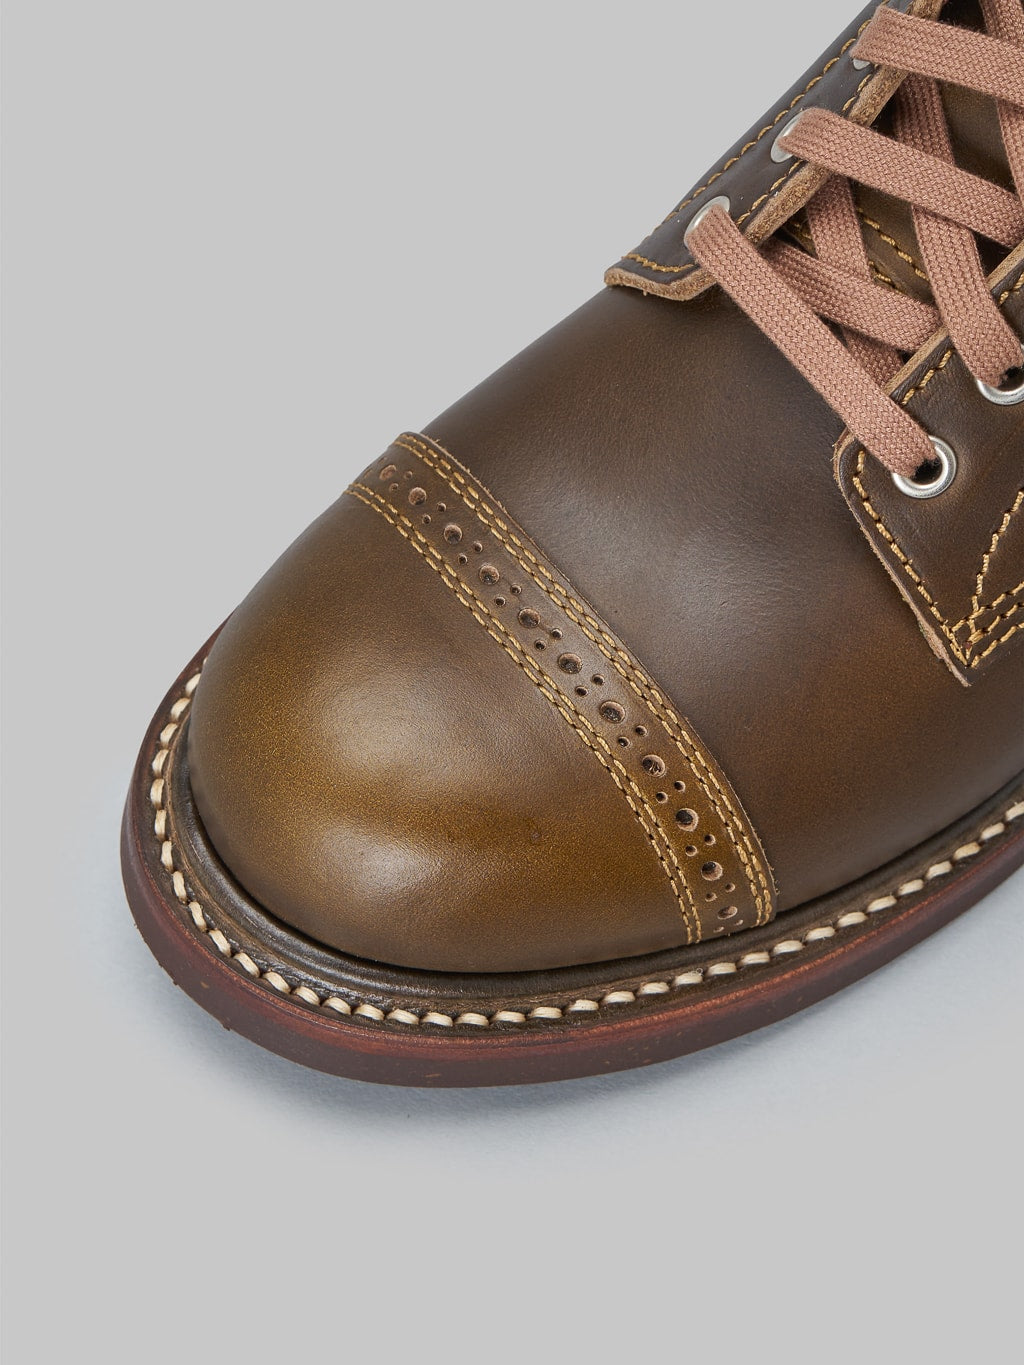 John Lofgren Combat Boots Horween Leather CXL Dark Olive toe